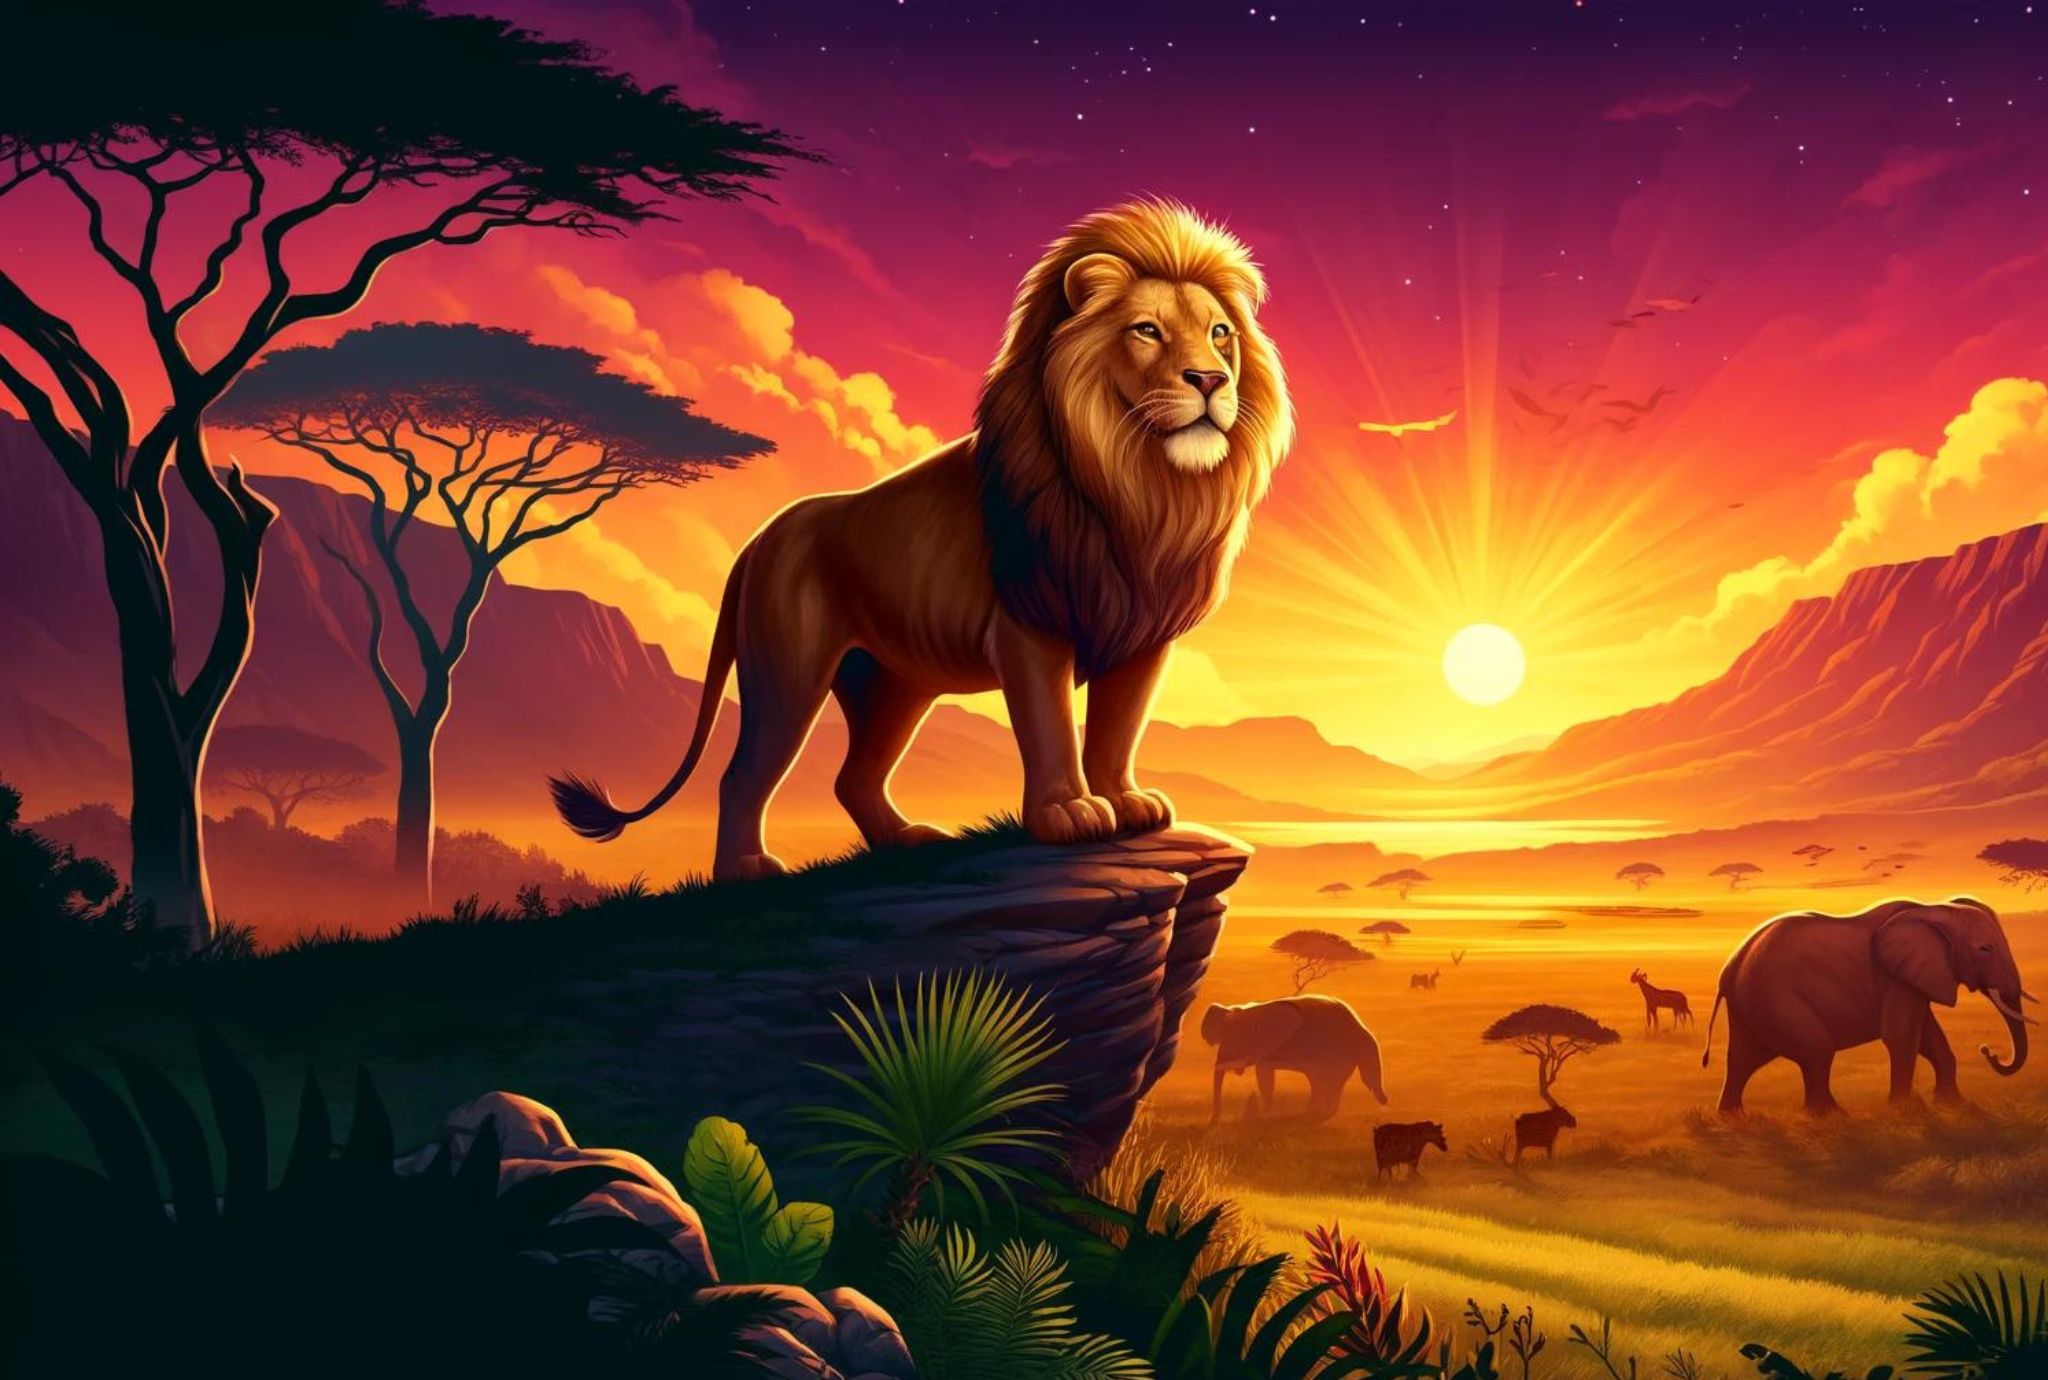 Obra de teatro de El Rey león